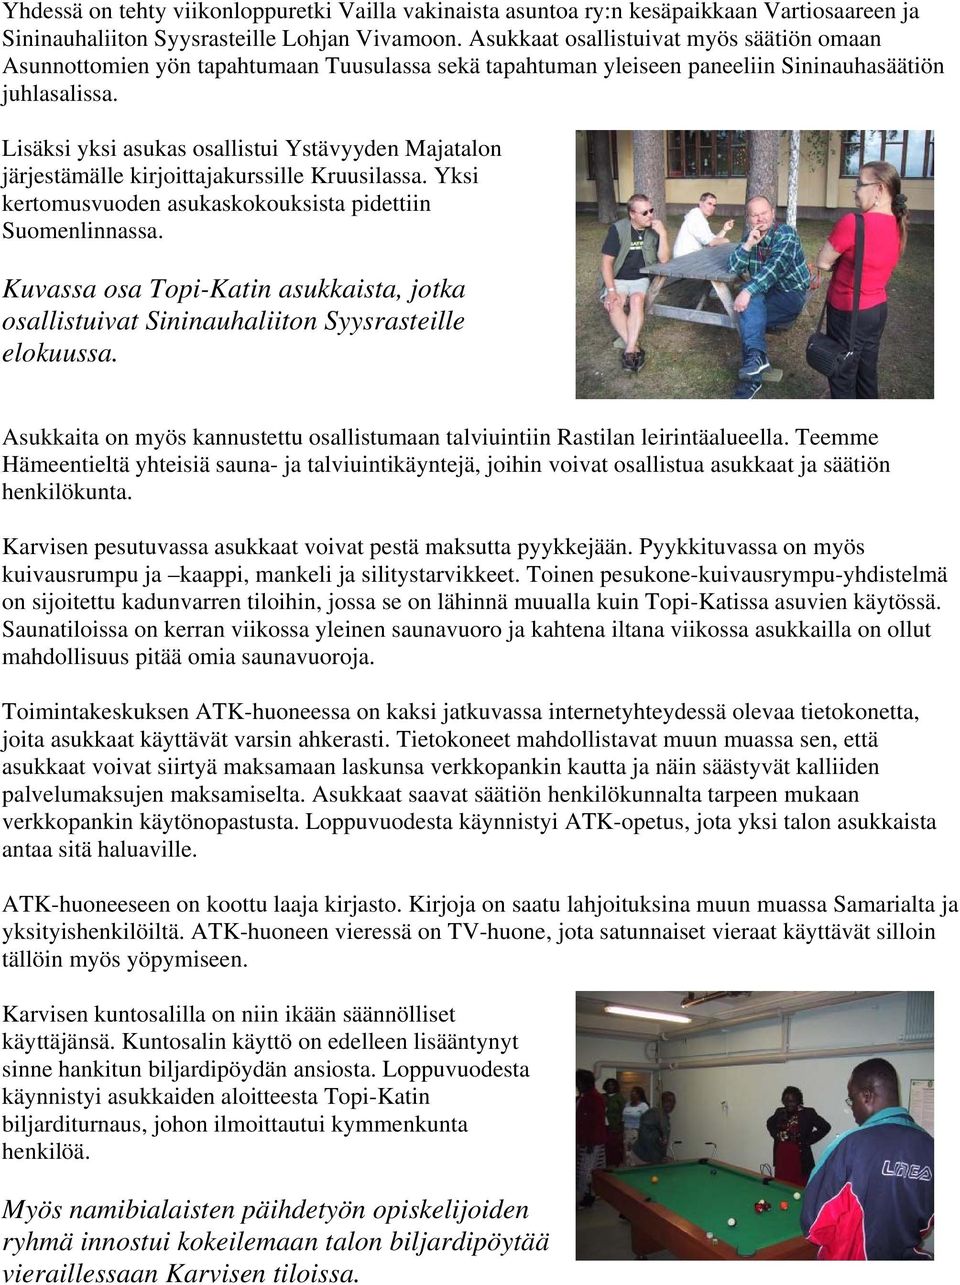 Lisäksi yksi asukas osallistui Ystävyyden Majatalon järjestämälle kirjoittajakurssille Kruusilassa. Yksi kertomusvuoden asukaskokouksista pidettiin Suomenlinnassa.